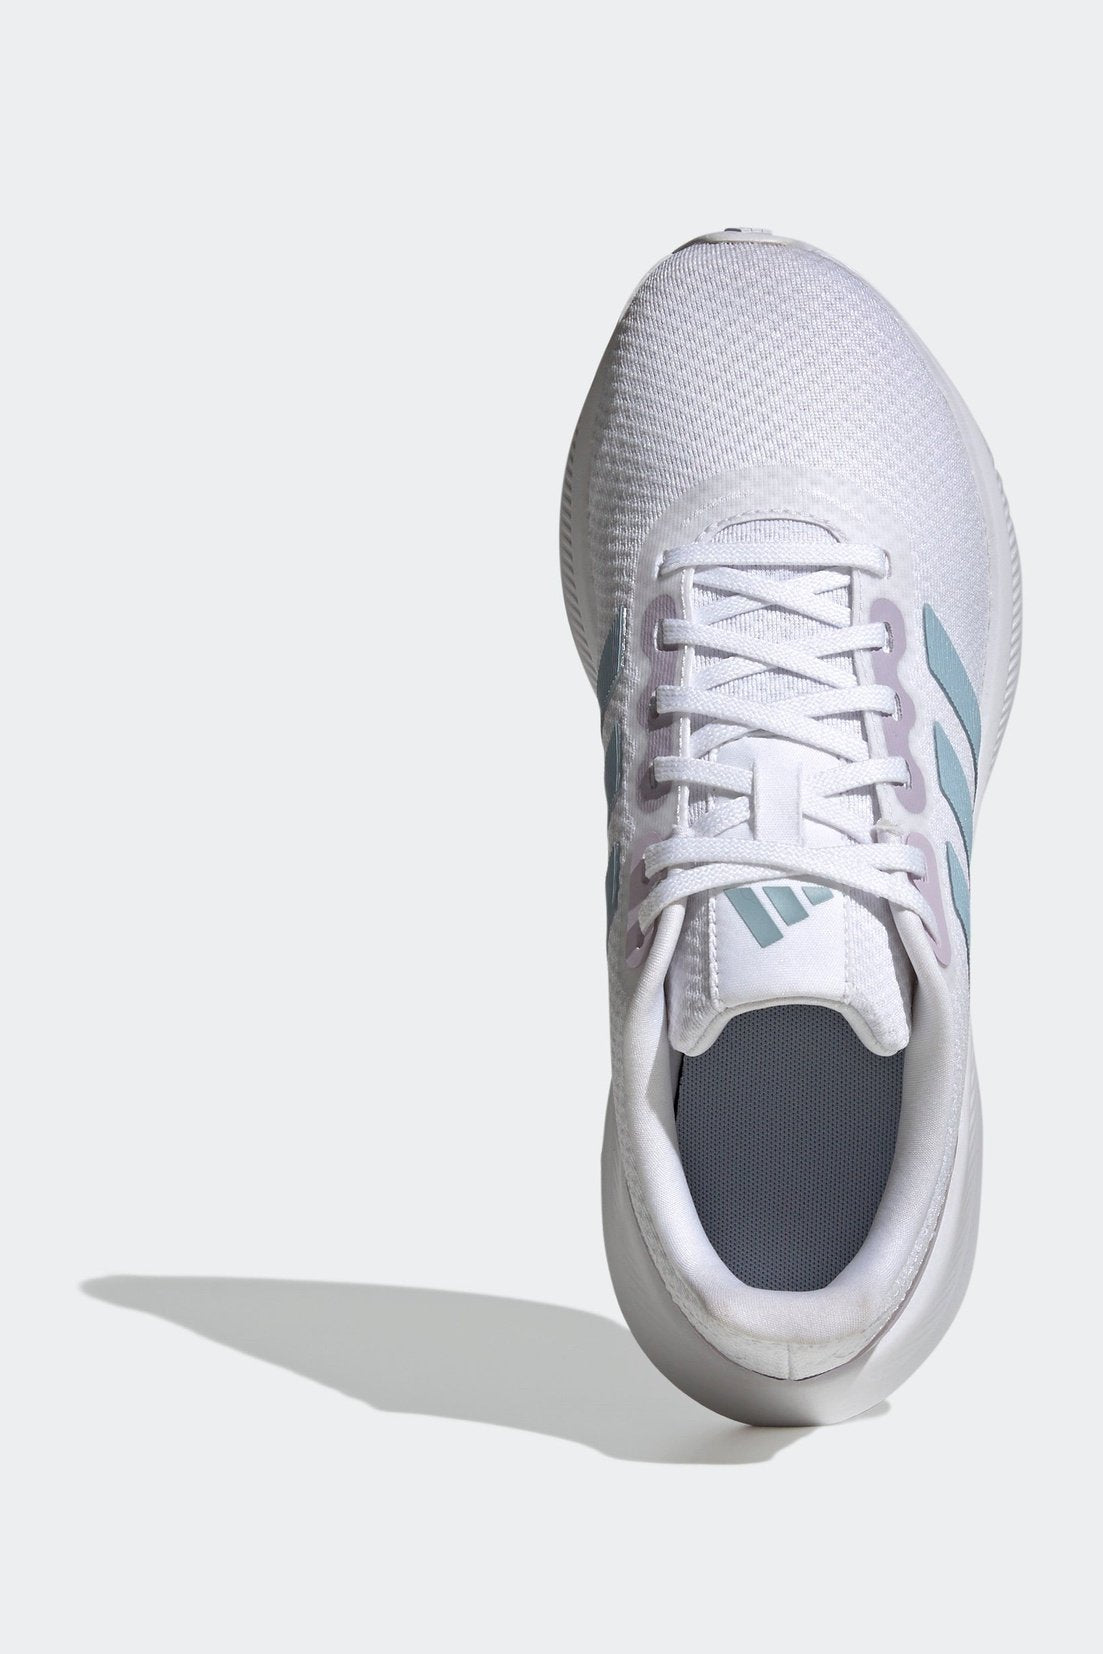 נעלי ספורט לנשים RUNFALCON 3.0 בצבע לבן ותכלת